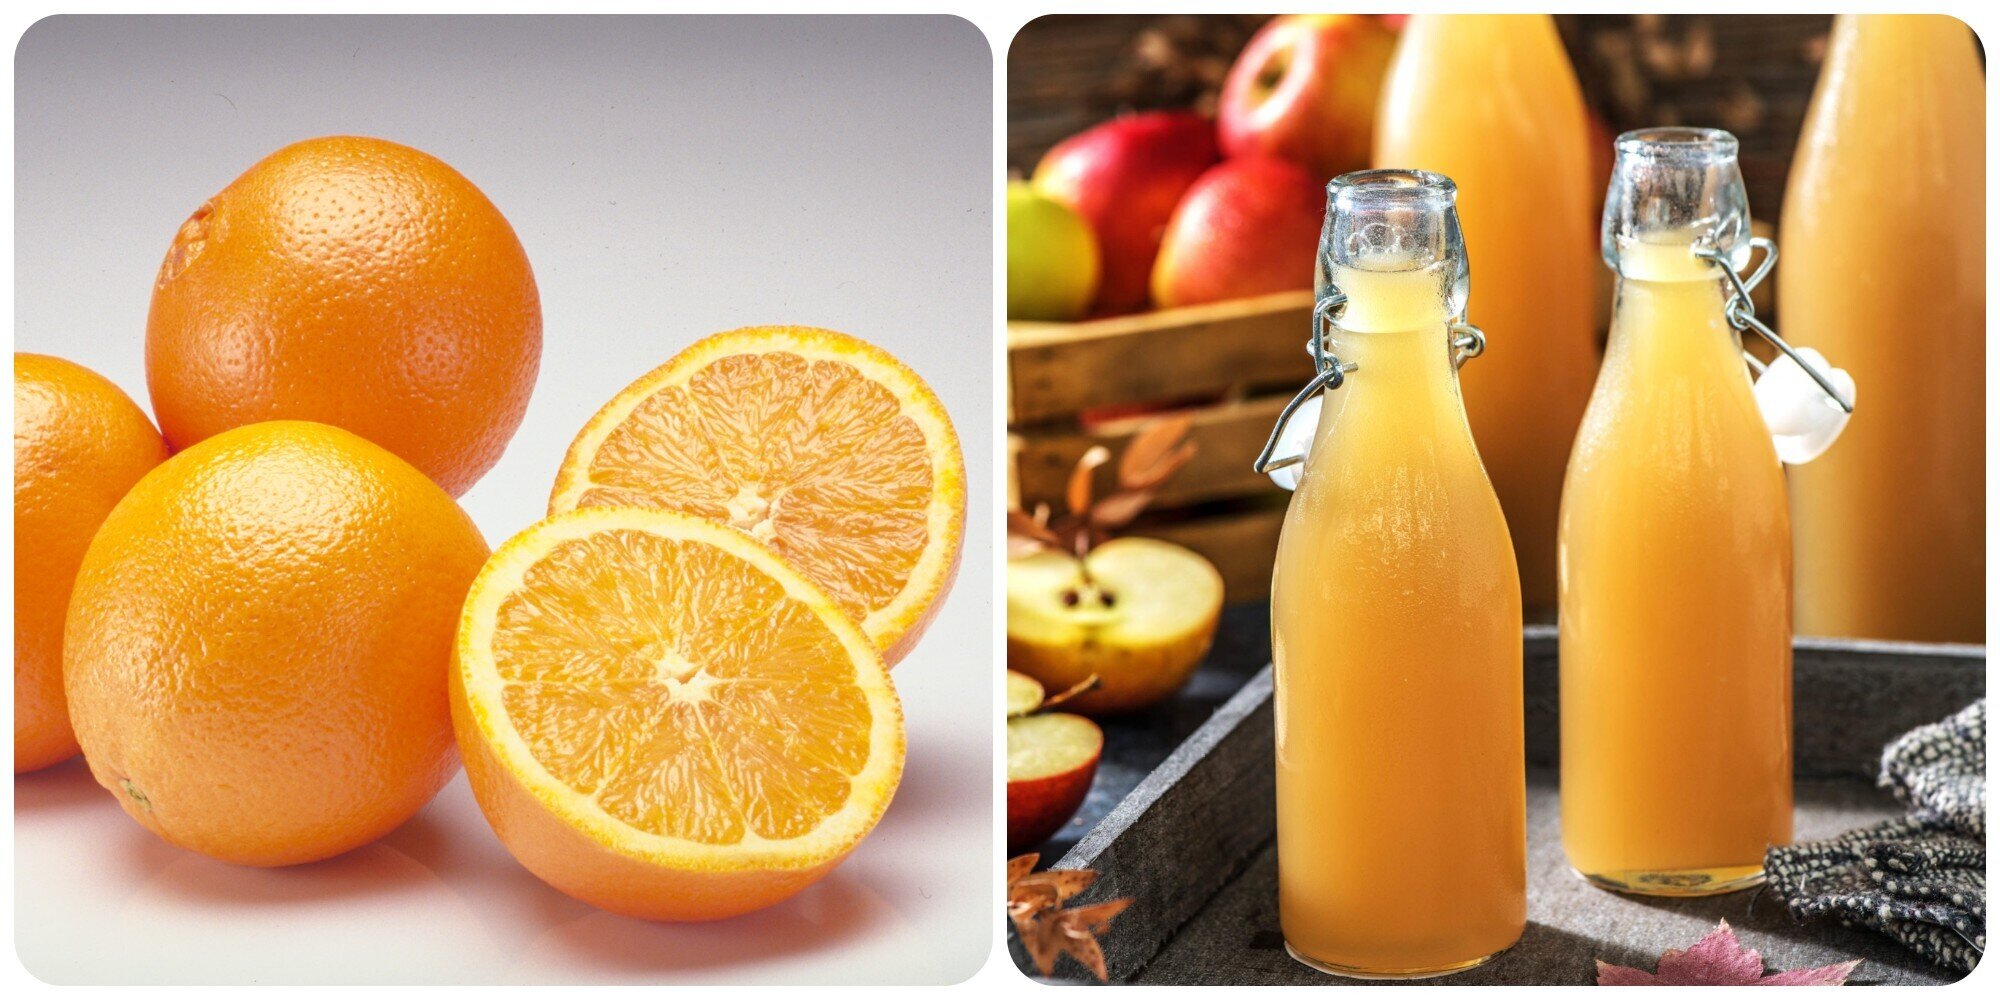 Nước cam là thức uống bổ dưỡng được nhiều người yêu thích